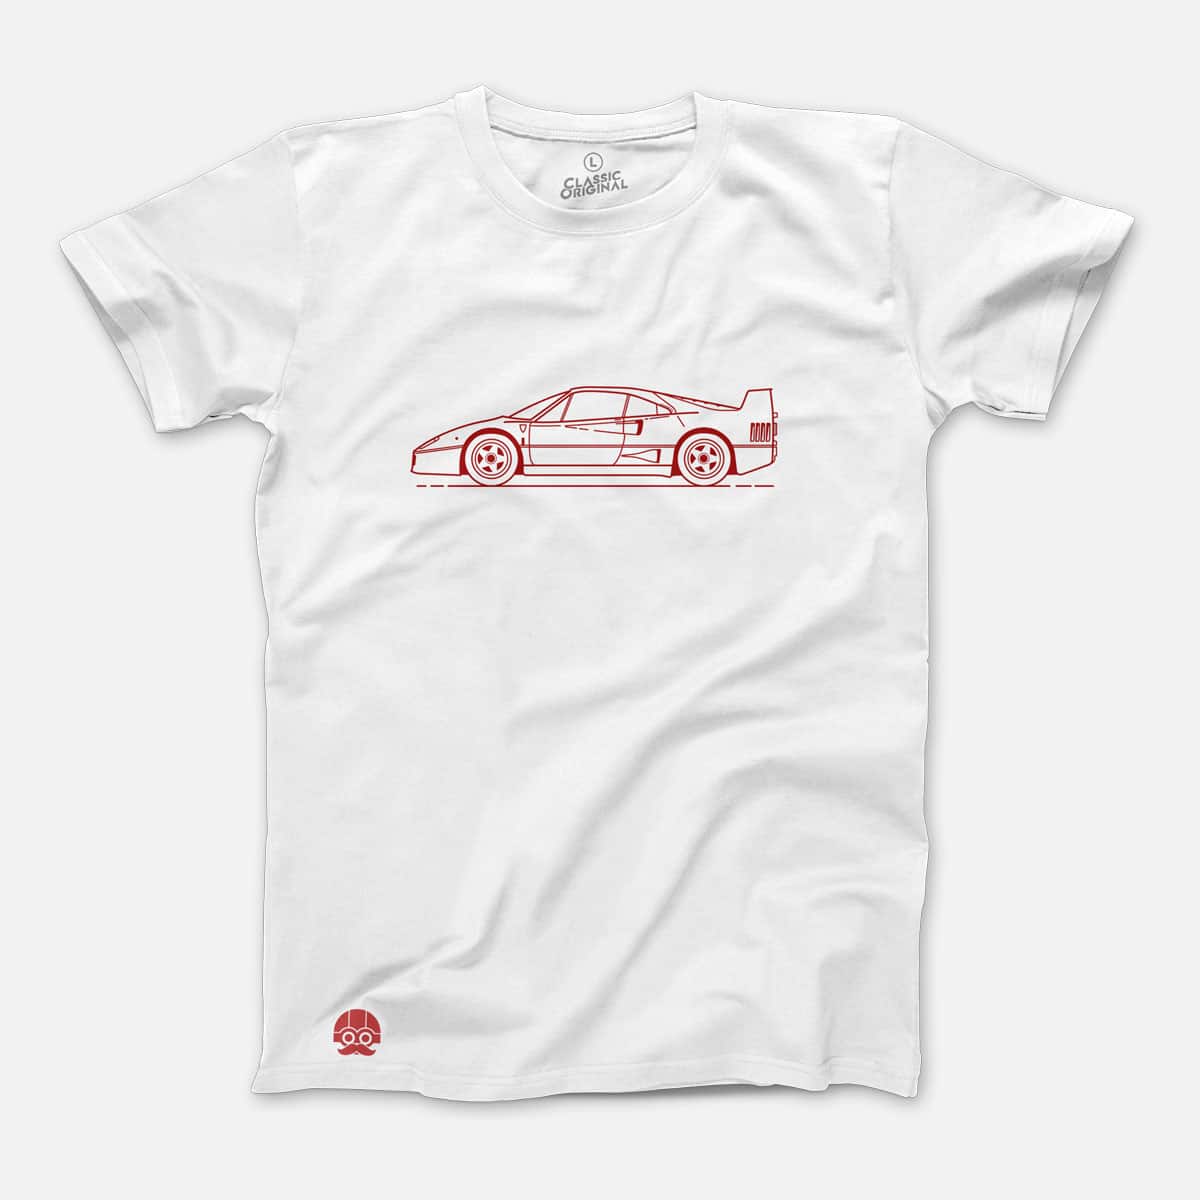 Koszulka z Ferrari F40